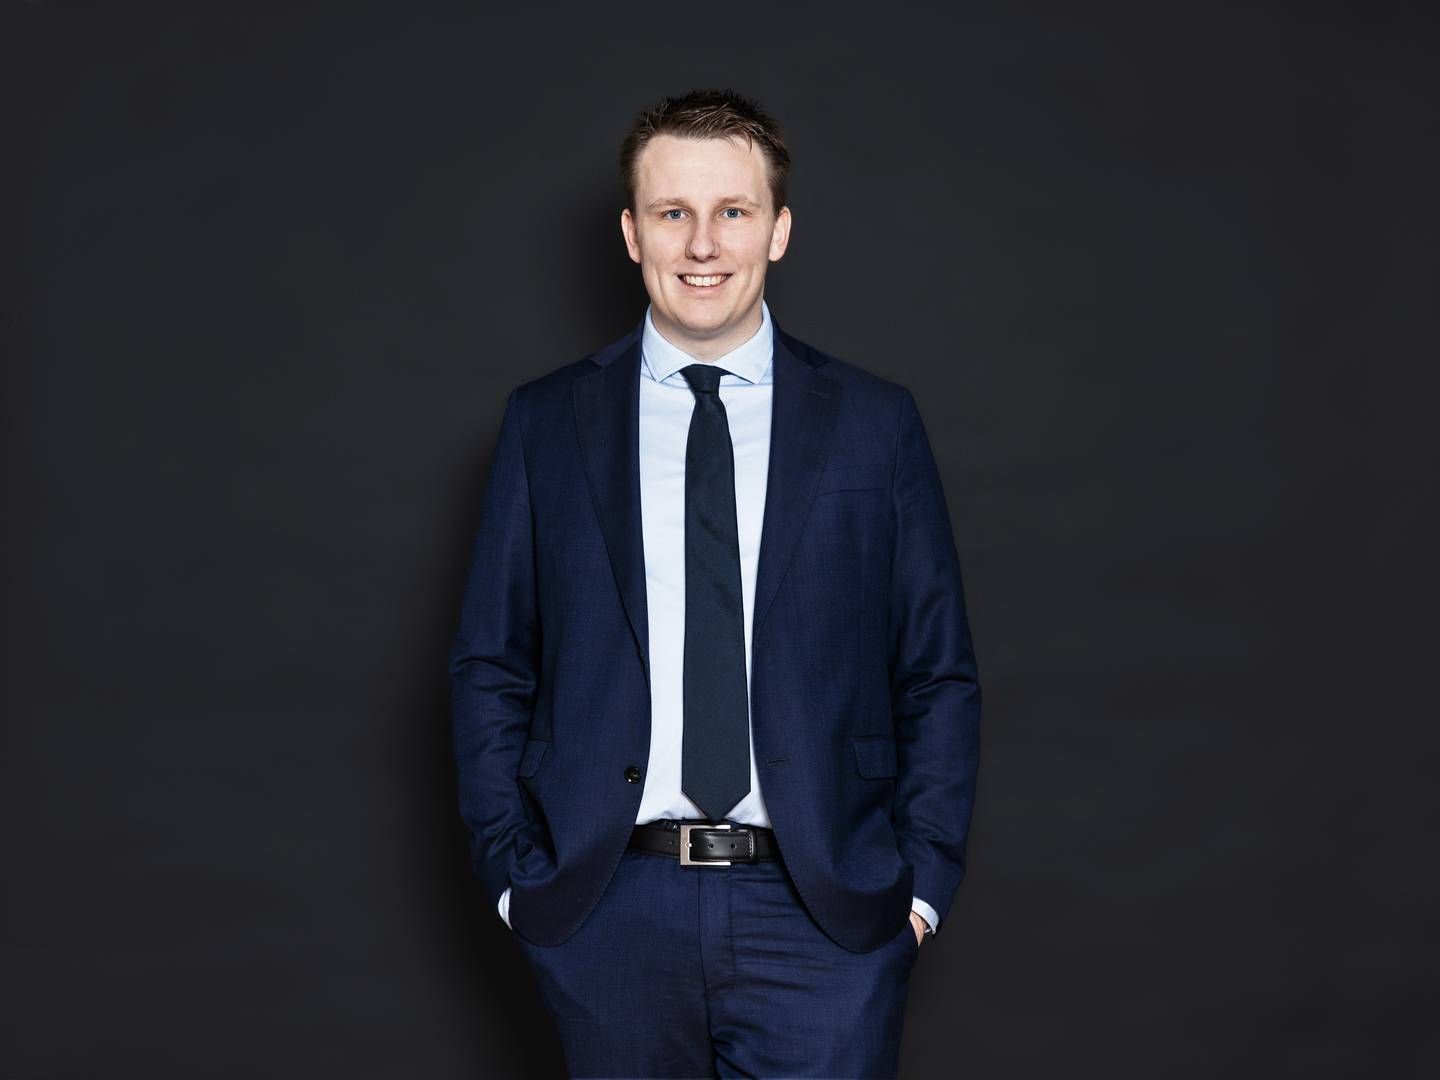 32-årige Mads Søby er ved årsskiftet indtrådt som medejer i Mehl & Schierbeck Advokater. Han arbejder primært med entrepriseret, erstatningsret, rådgiveransvar og fast ejendom i bred forstand. | Foto: Stine Heilmann